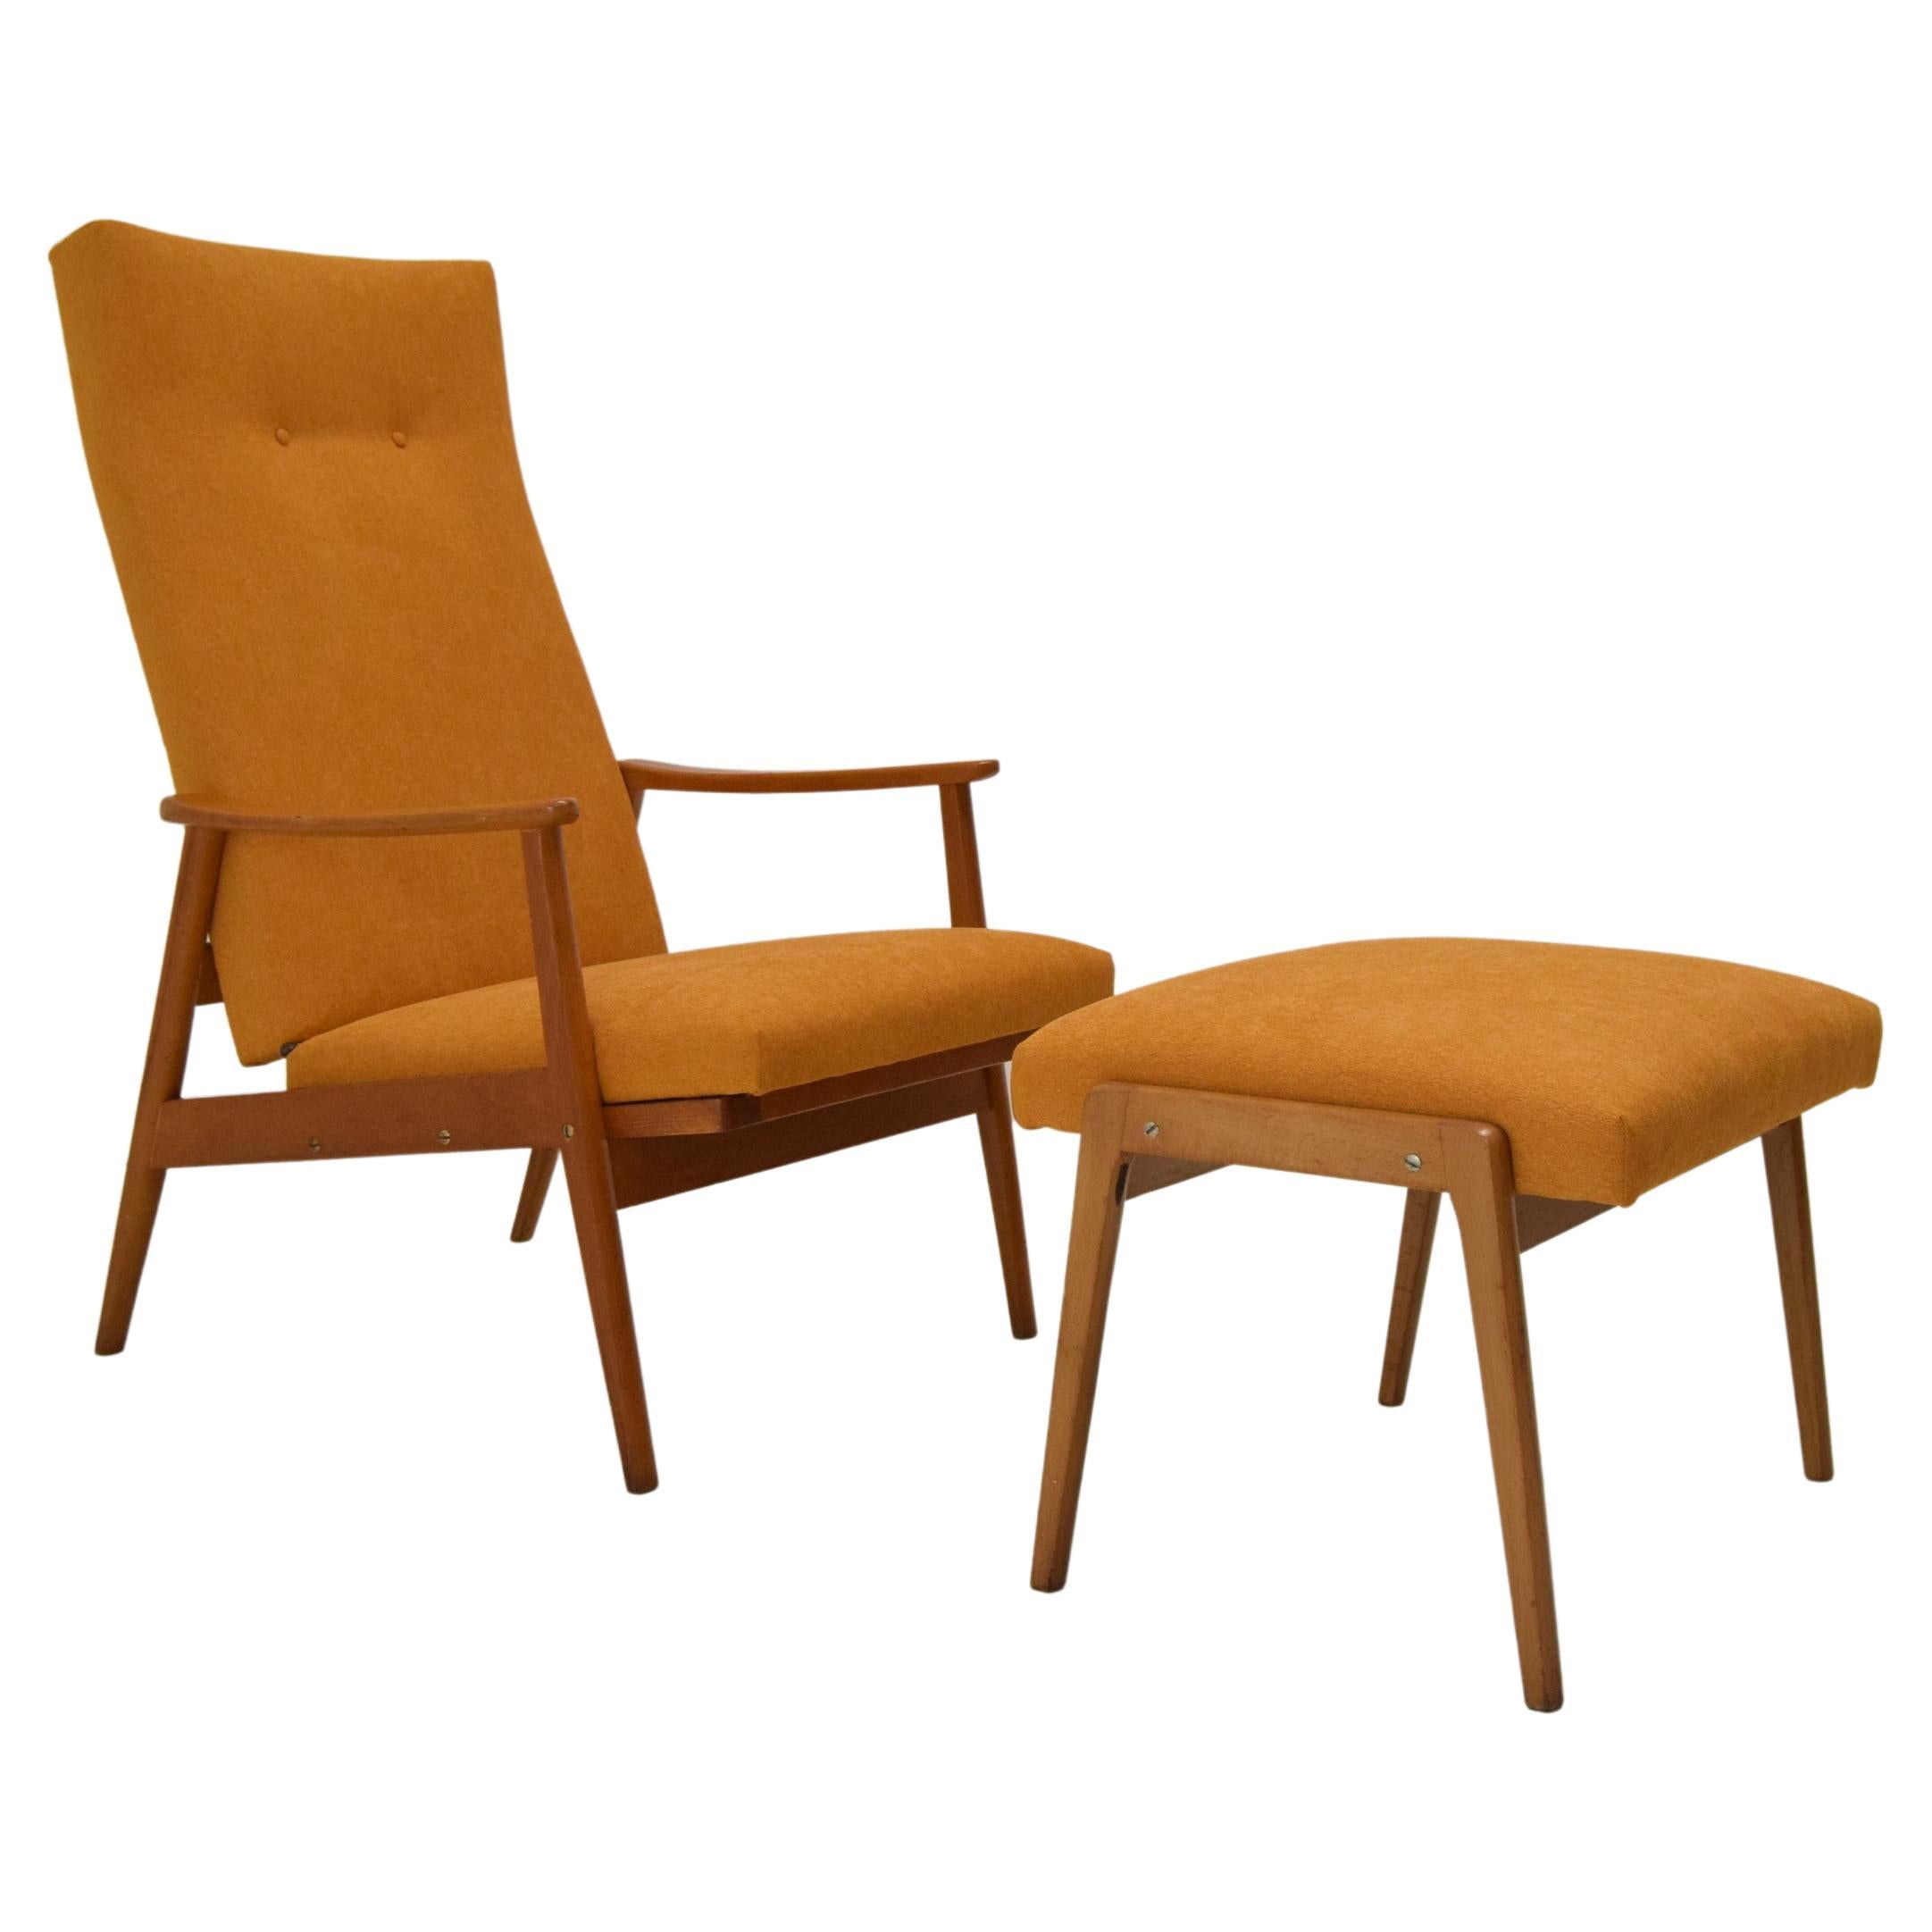 Midcentury Adjustable Armchair and Footstool, Jitona, 1960s